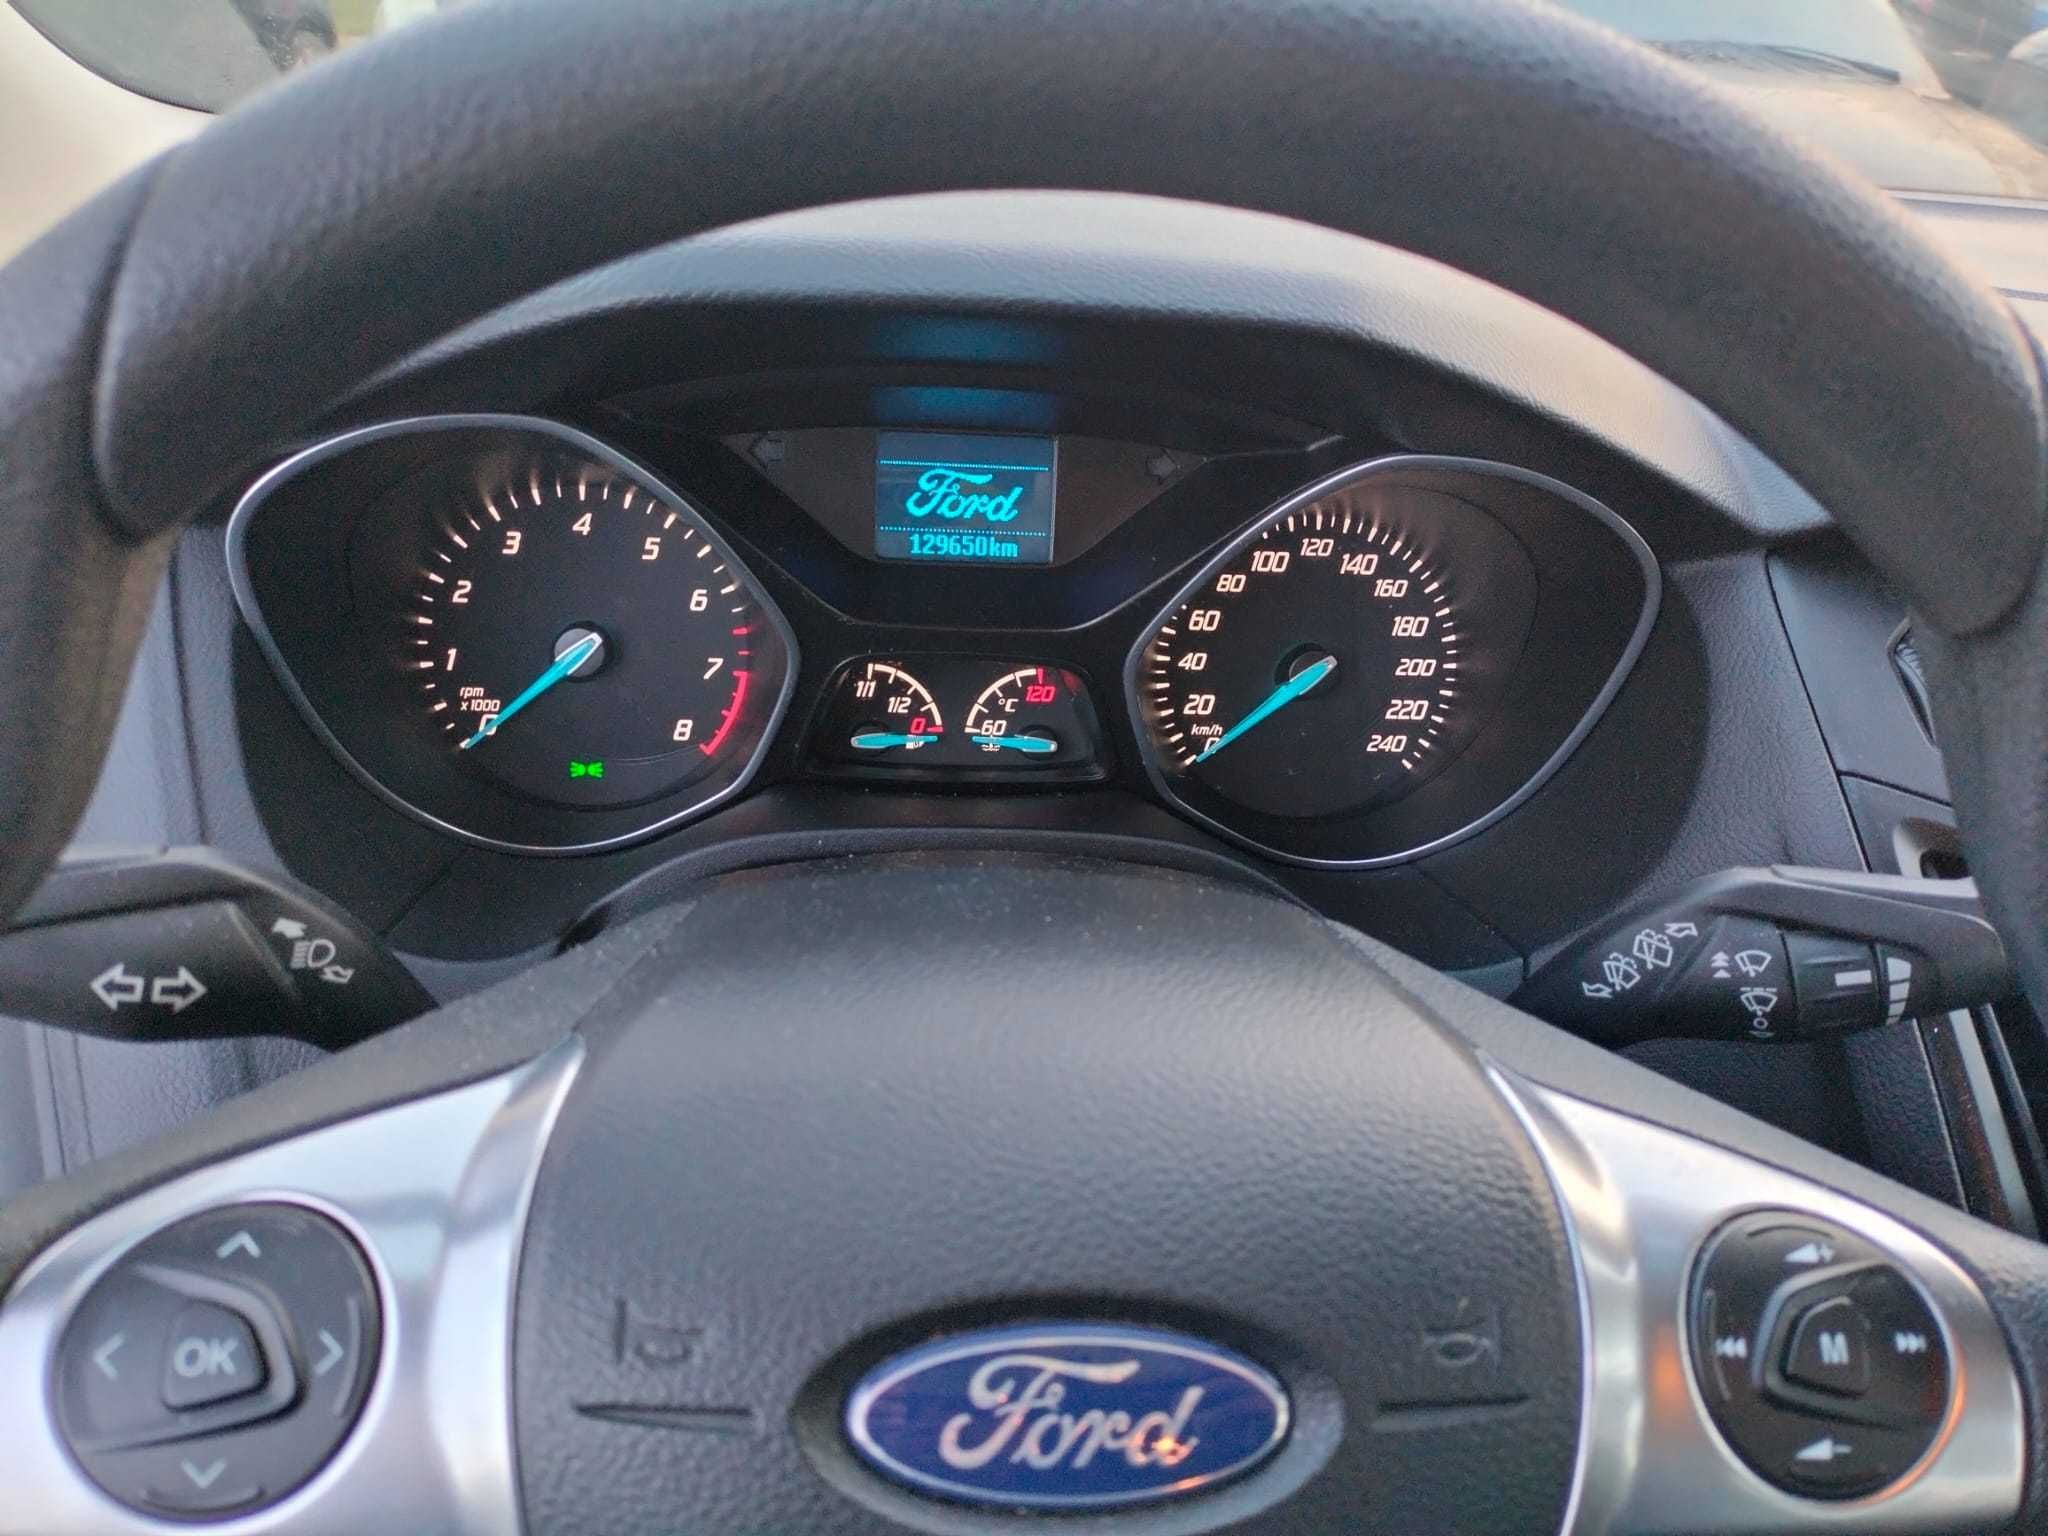 Ford Focus 2014 benzyna 129 tys przebiegu bezwypadkowy idealny